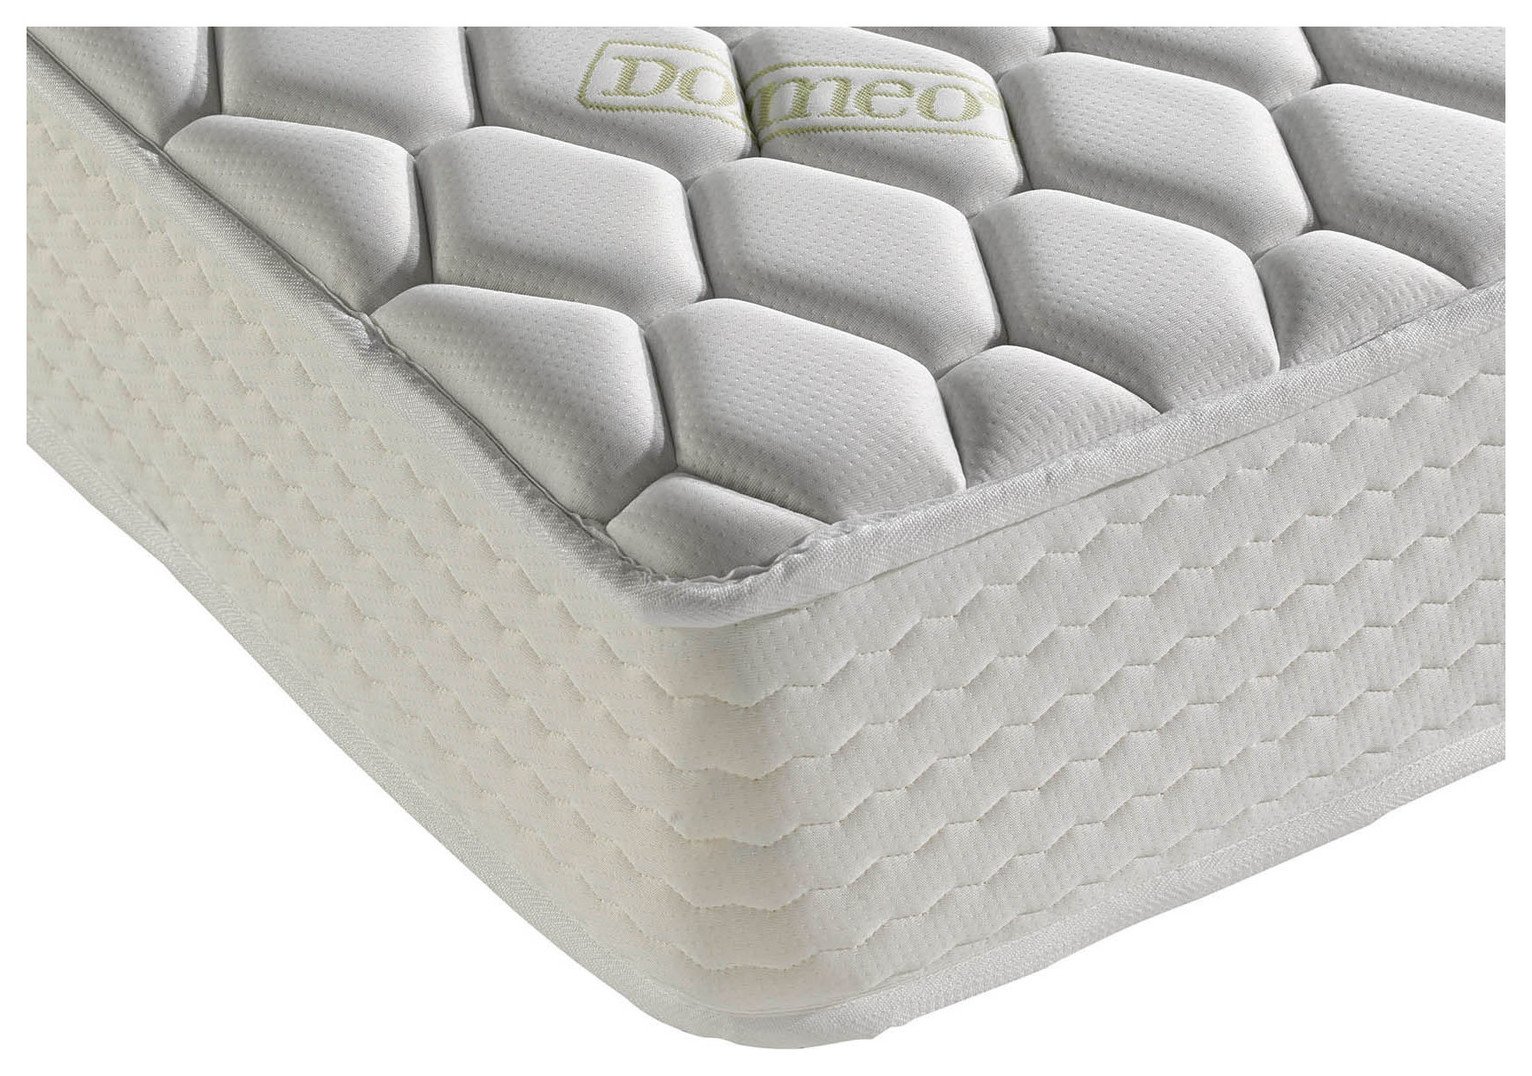 standard single memory foam mattress